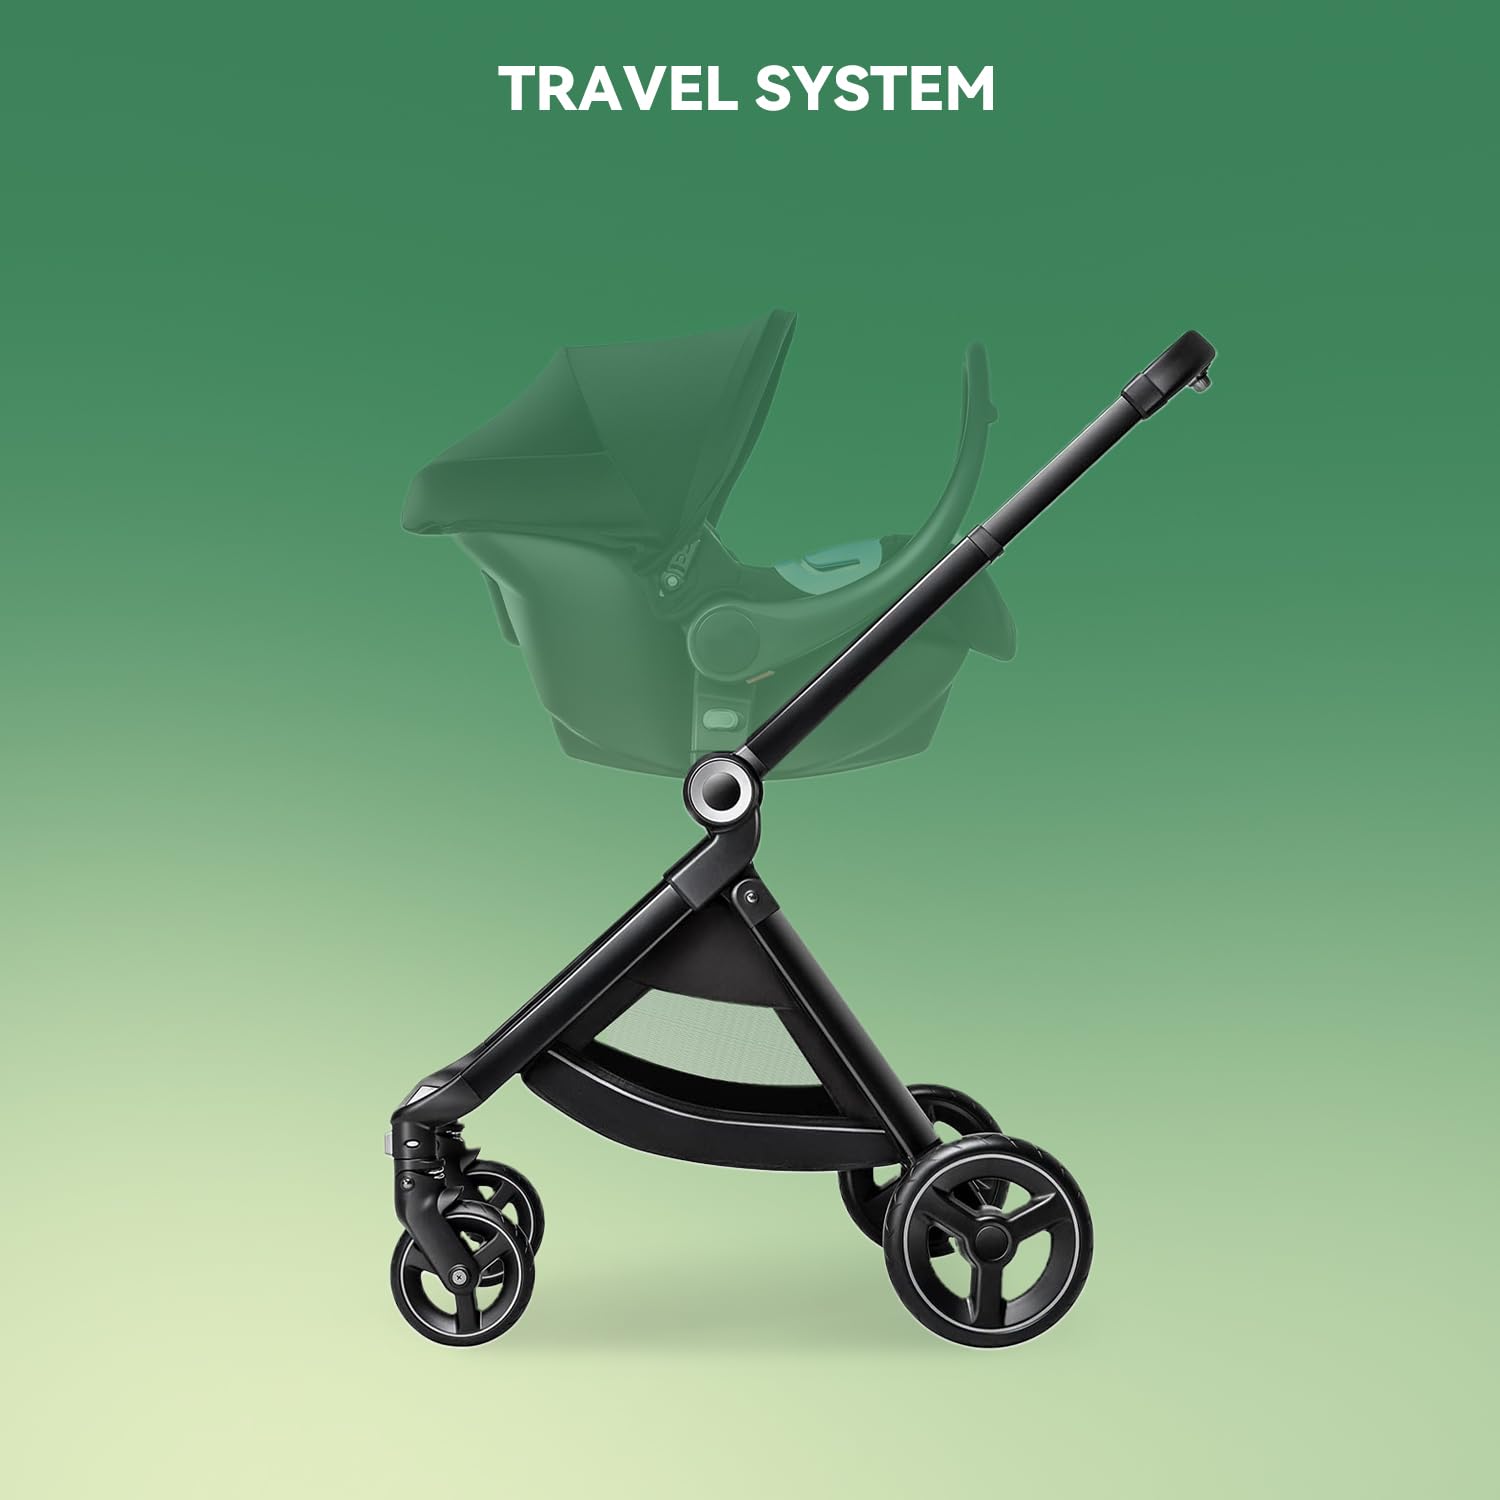 Reversible Baby Stroller, ELITTLE EMU Full-Size Toddler Stroller, Full Recline Cockpit Compact Stroller, 0-36 Months Newborn Infant Stroller, All-Terrain Stroller for City, Outdoor, Travel (Black) - Reversible Baby Stroller Review